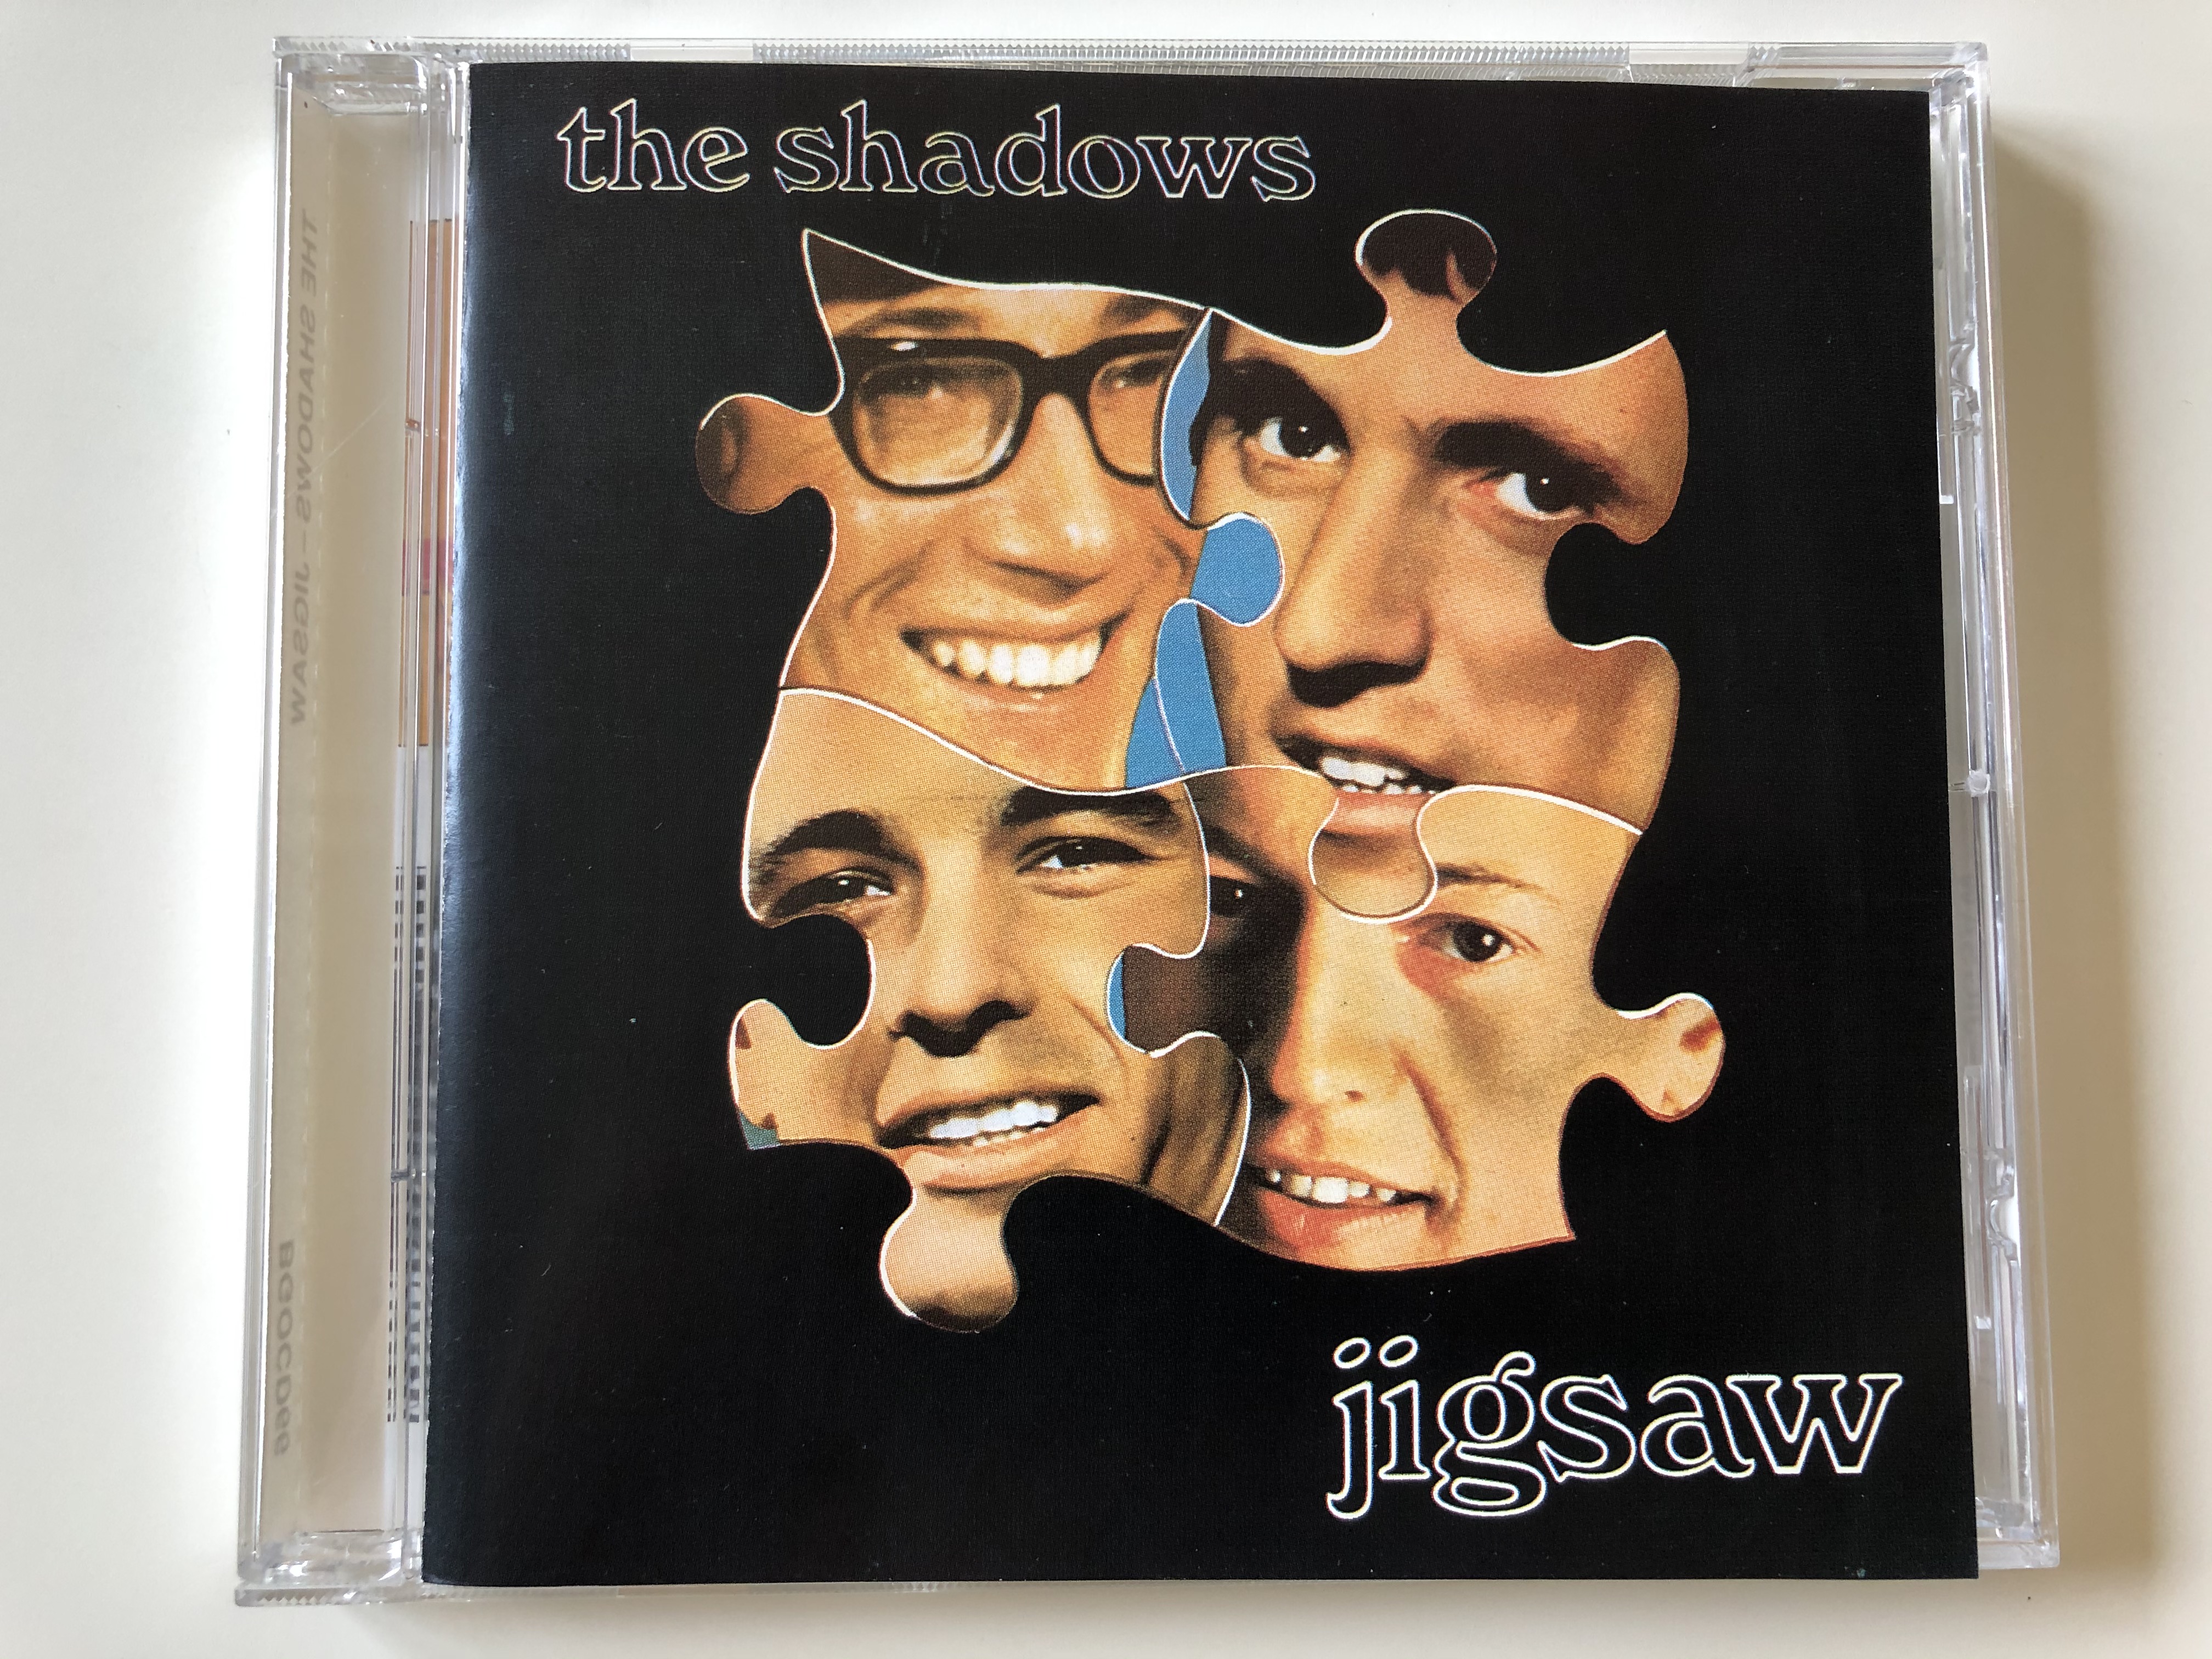 the-shadows-jigsaw-bgo-records-audio-cd-1990-bgo-cd-66-1-.jpg